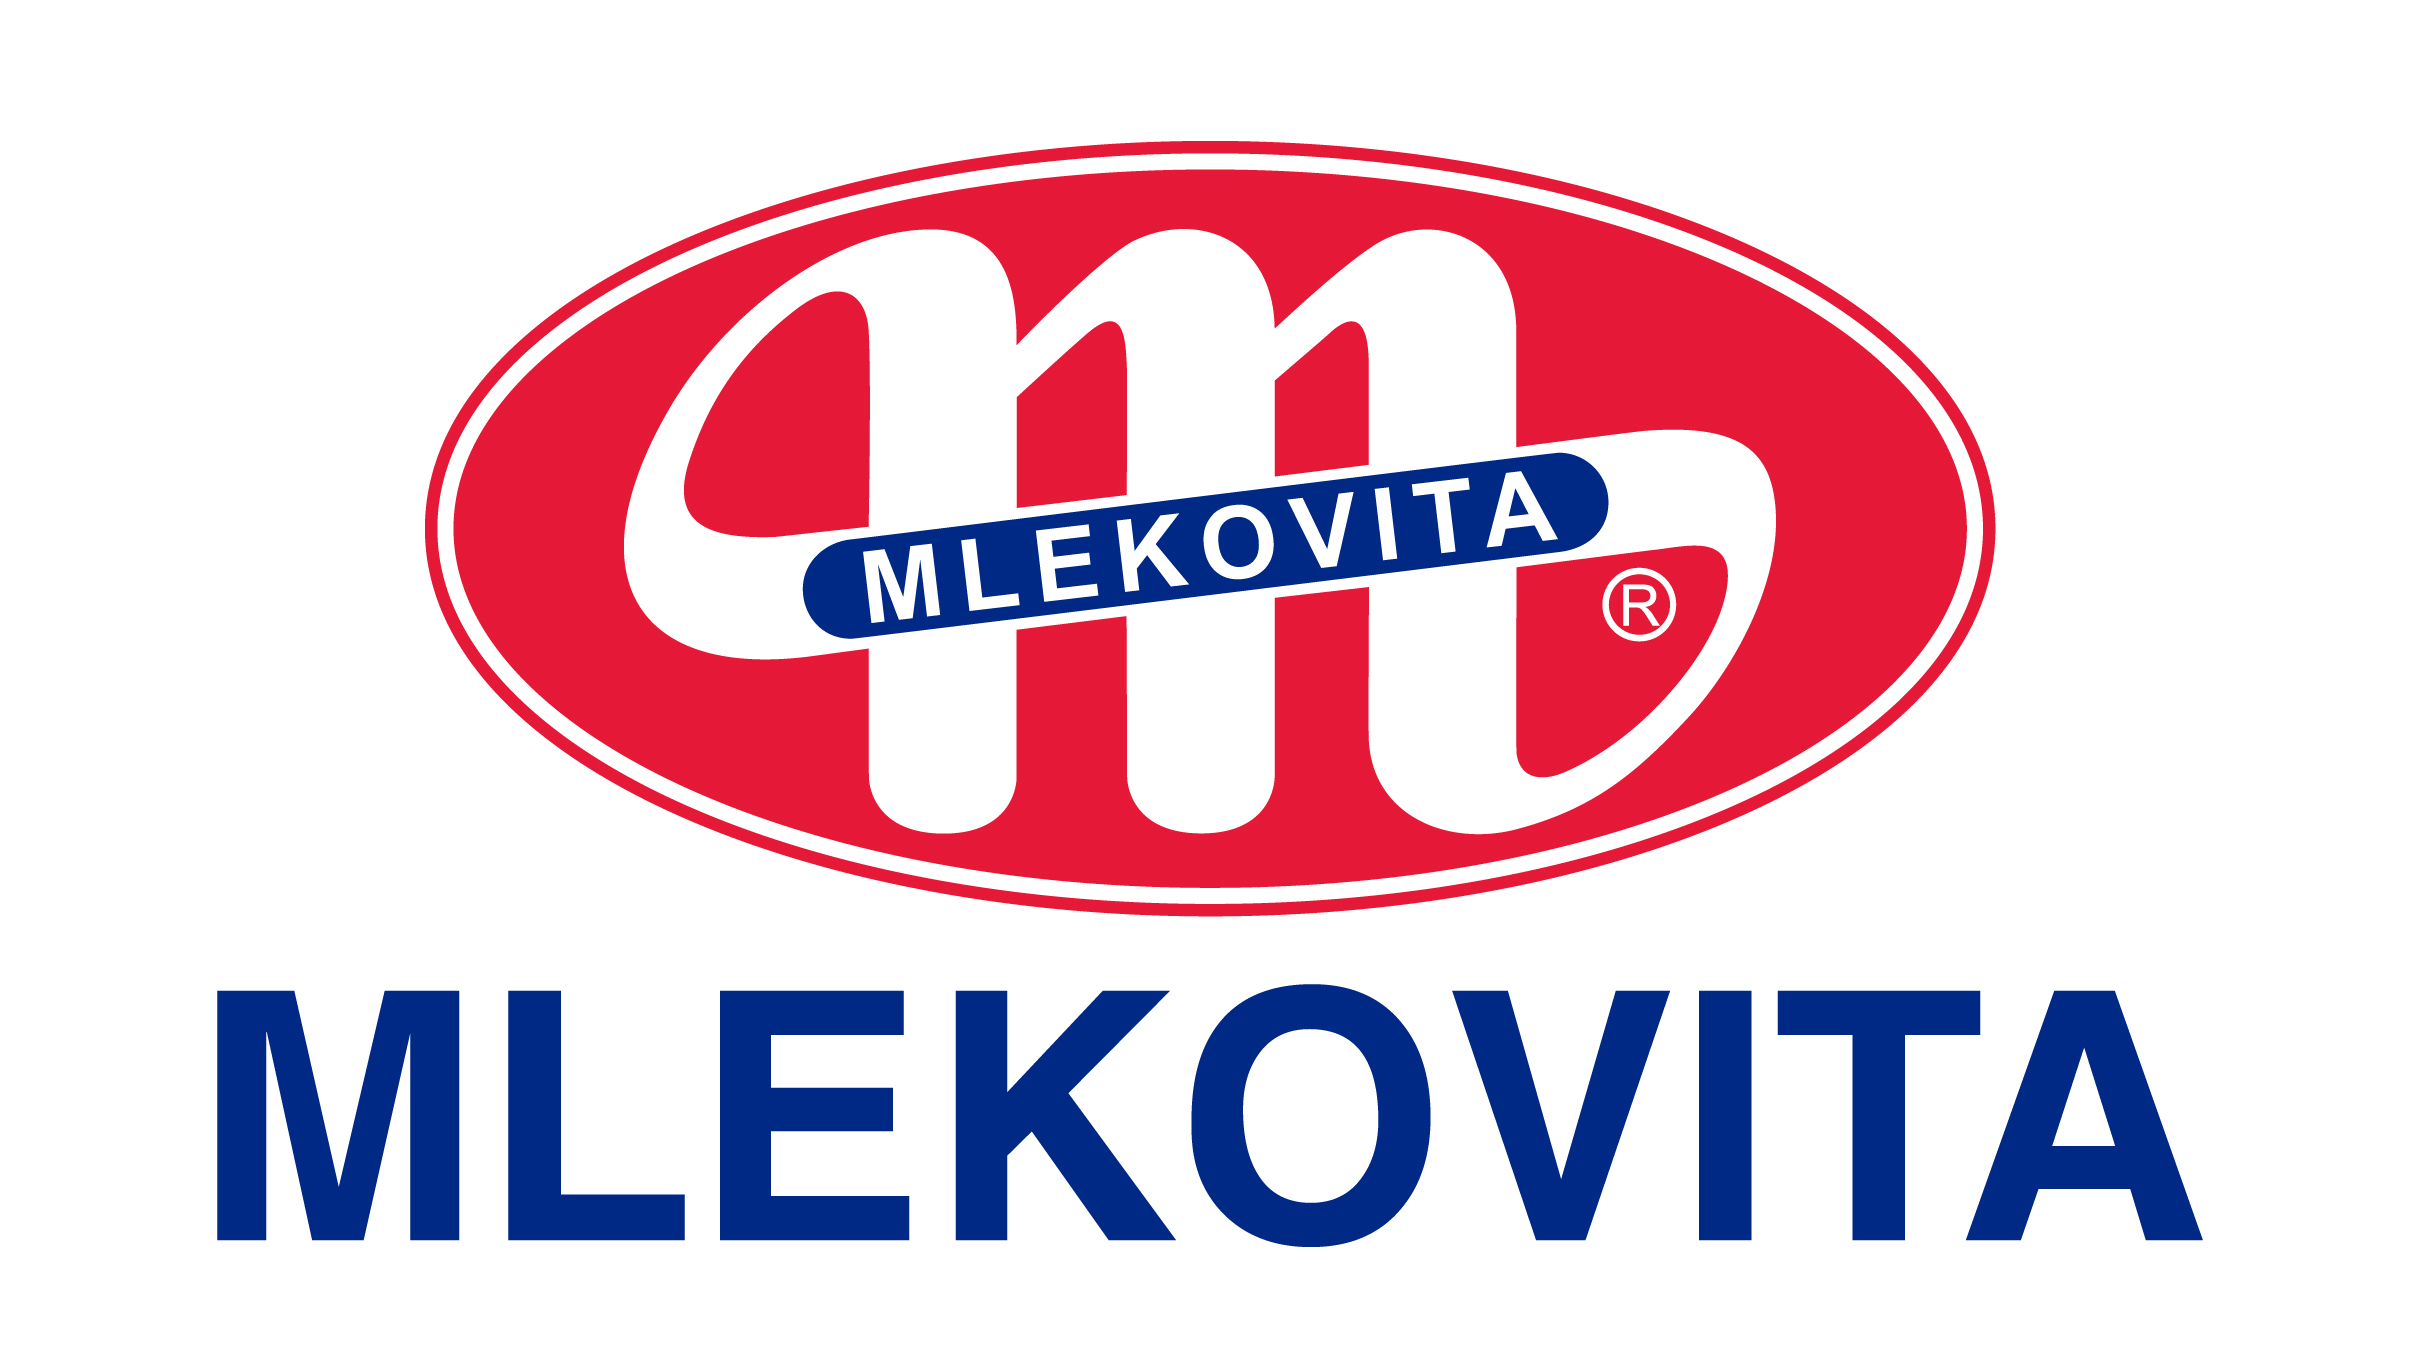 Produkty Mlekovity dostępne na całym świecie